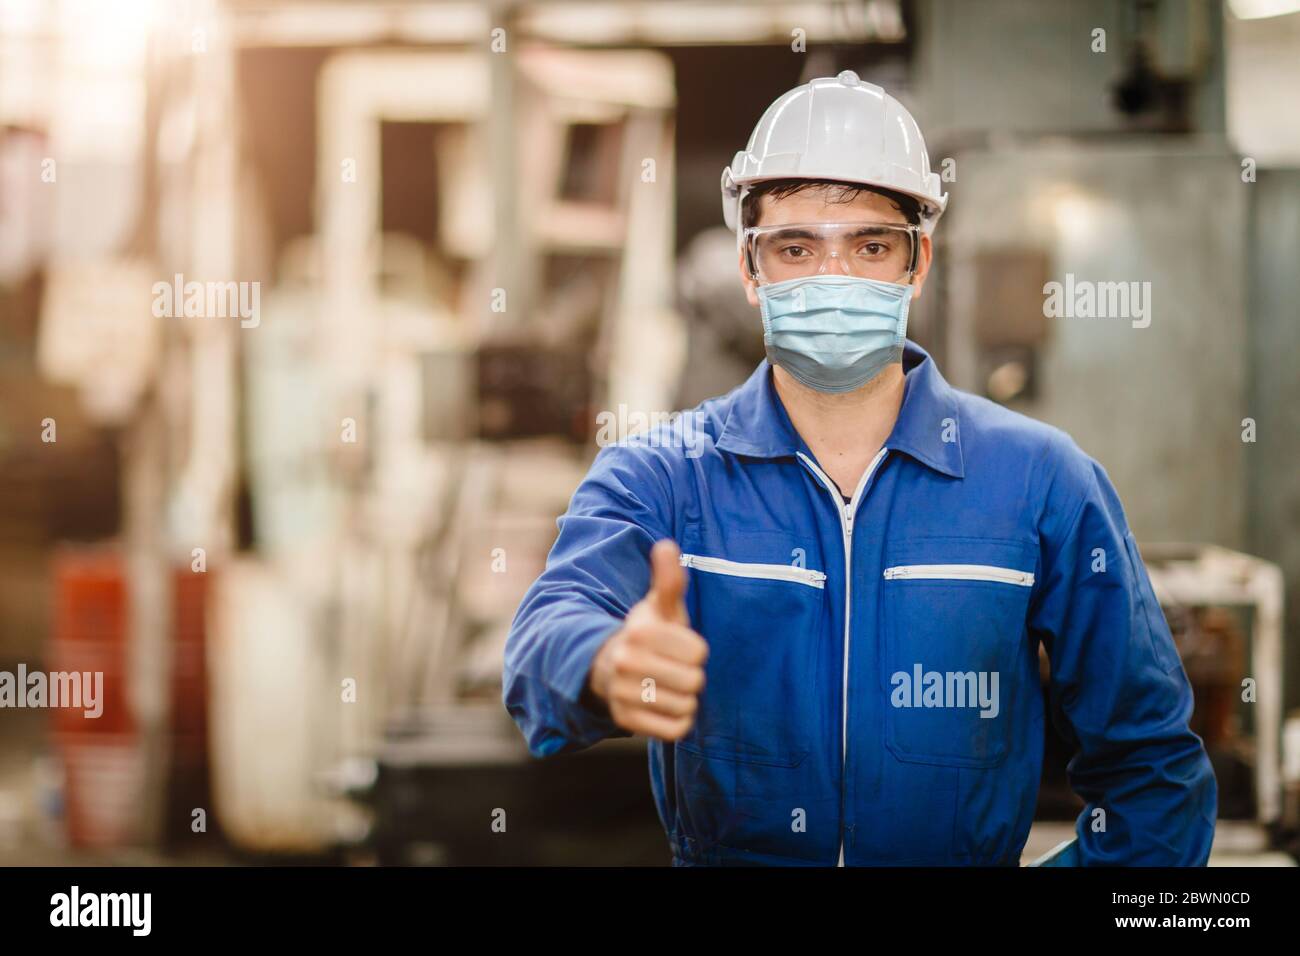 Operatore che indossa una visiera protettiva o una maschera monouso durante il lavoro in fabbrica per prevenire l'inquinamento da Coronavirus (Covid-19) o polvere d'aria in fabbrica Foto Stock